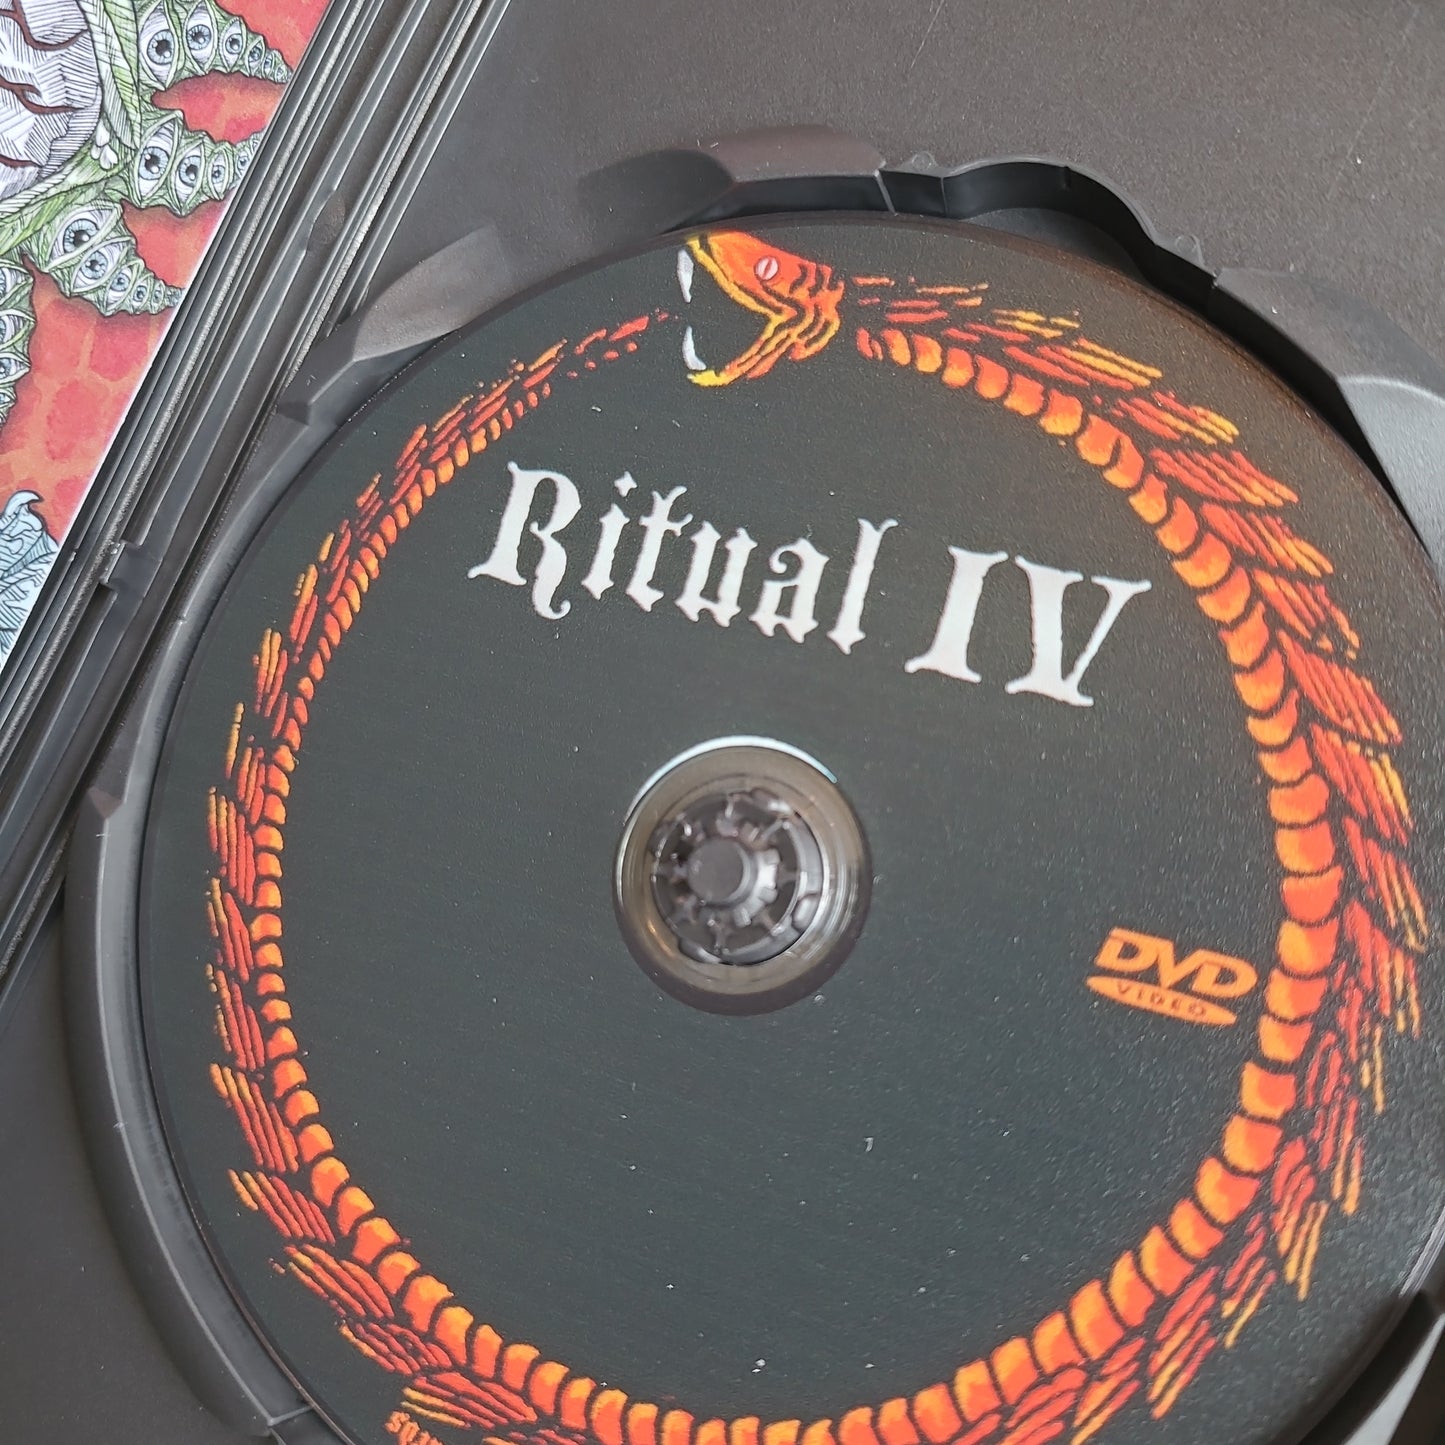 Ritual IV DVD